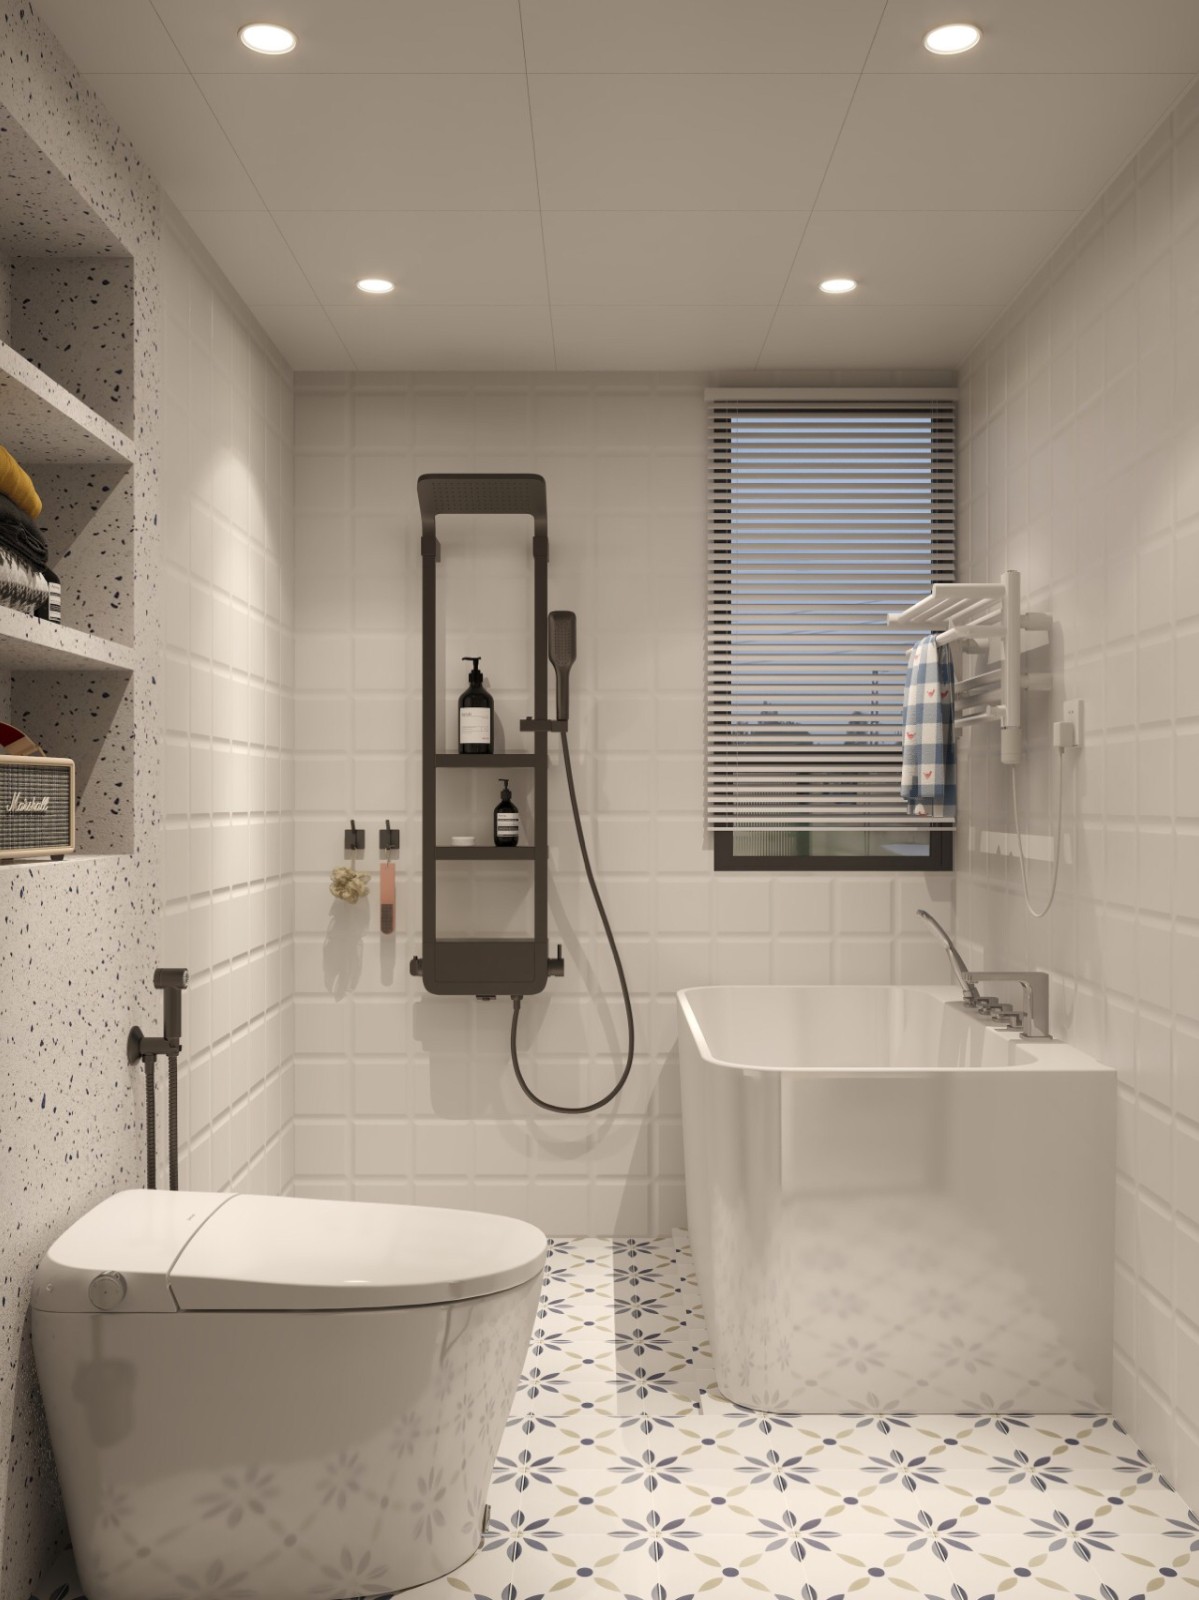 浴室装修设计教你怎么布置一个简约温馨有质感的卫生间